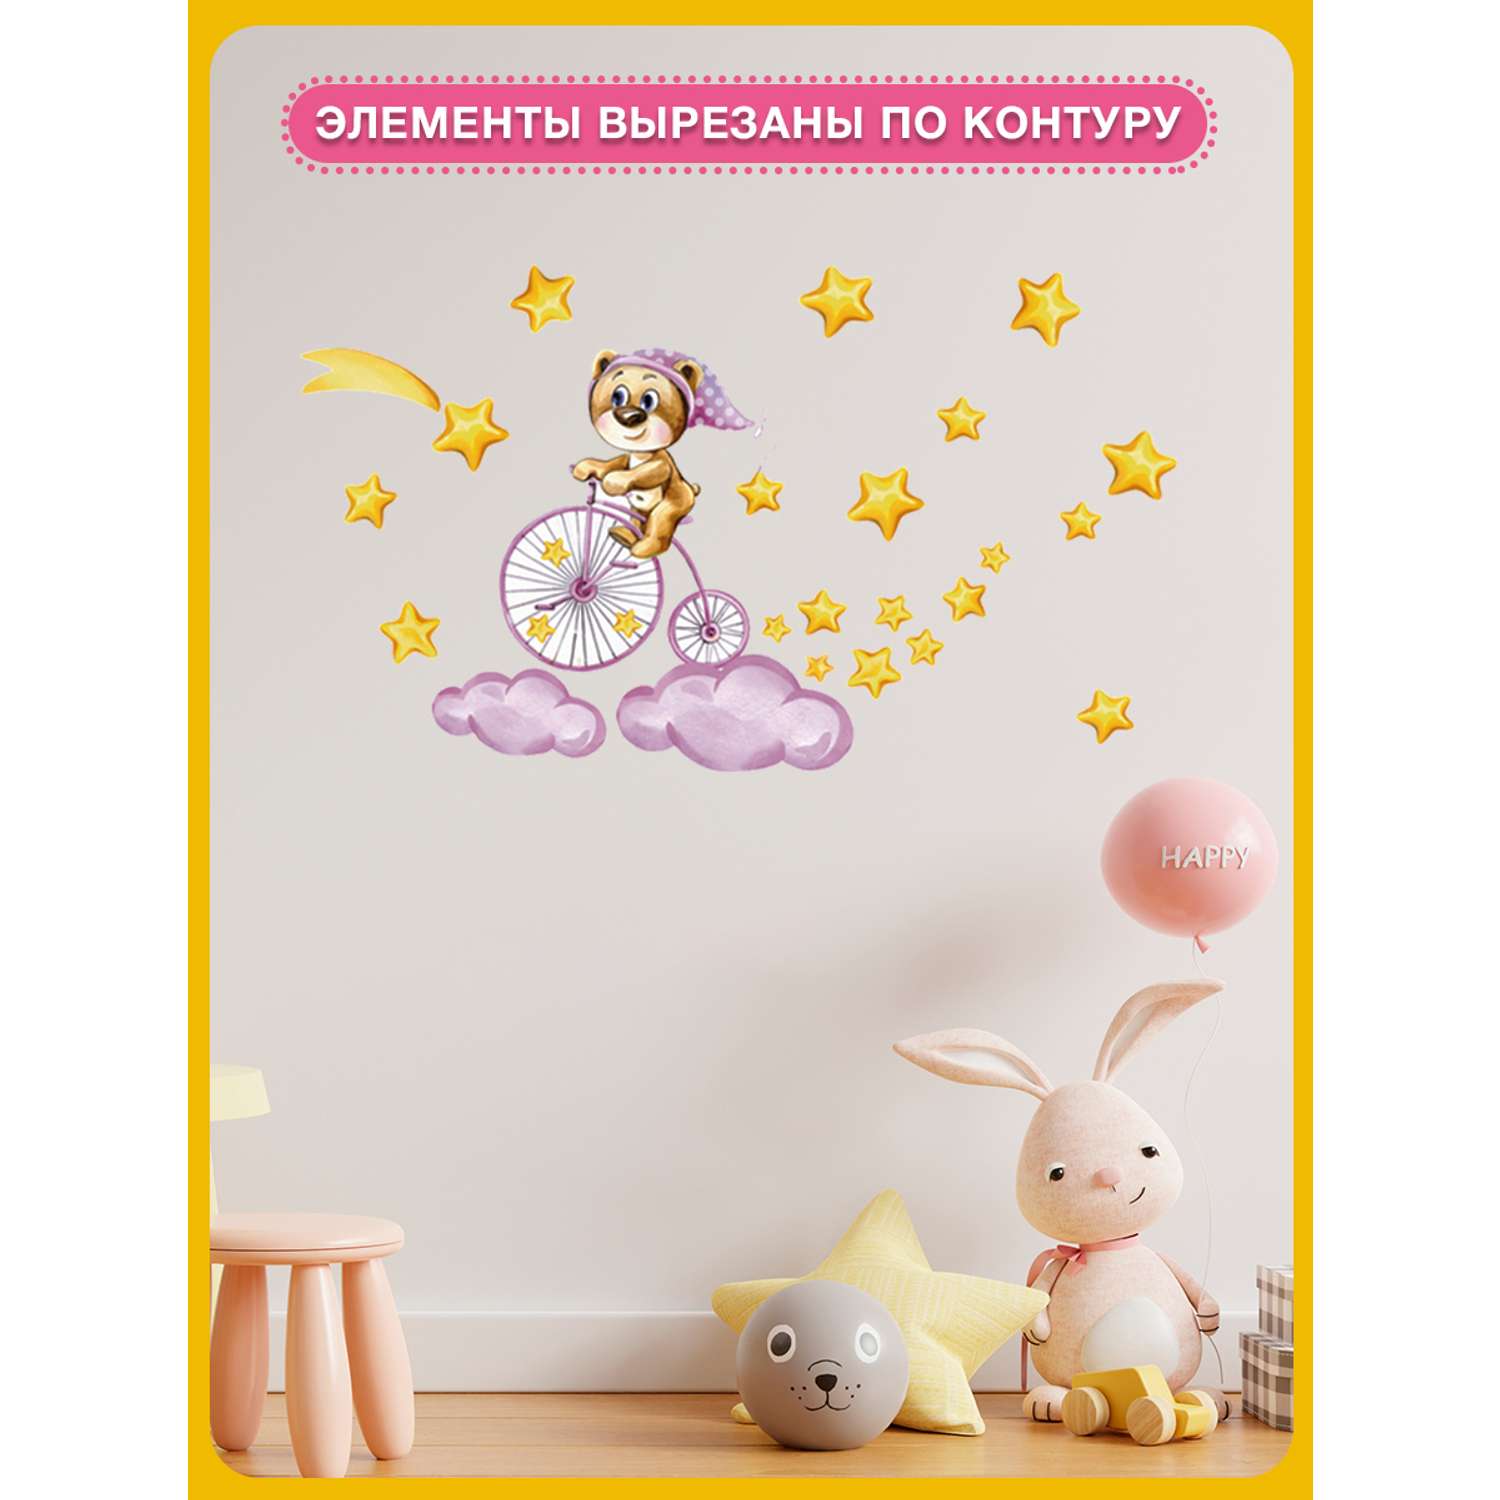 Наклейка оформительская ГК Горчаков в детскую комнату дочке с рисунком мишка для декора - фото 5